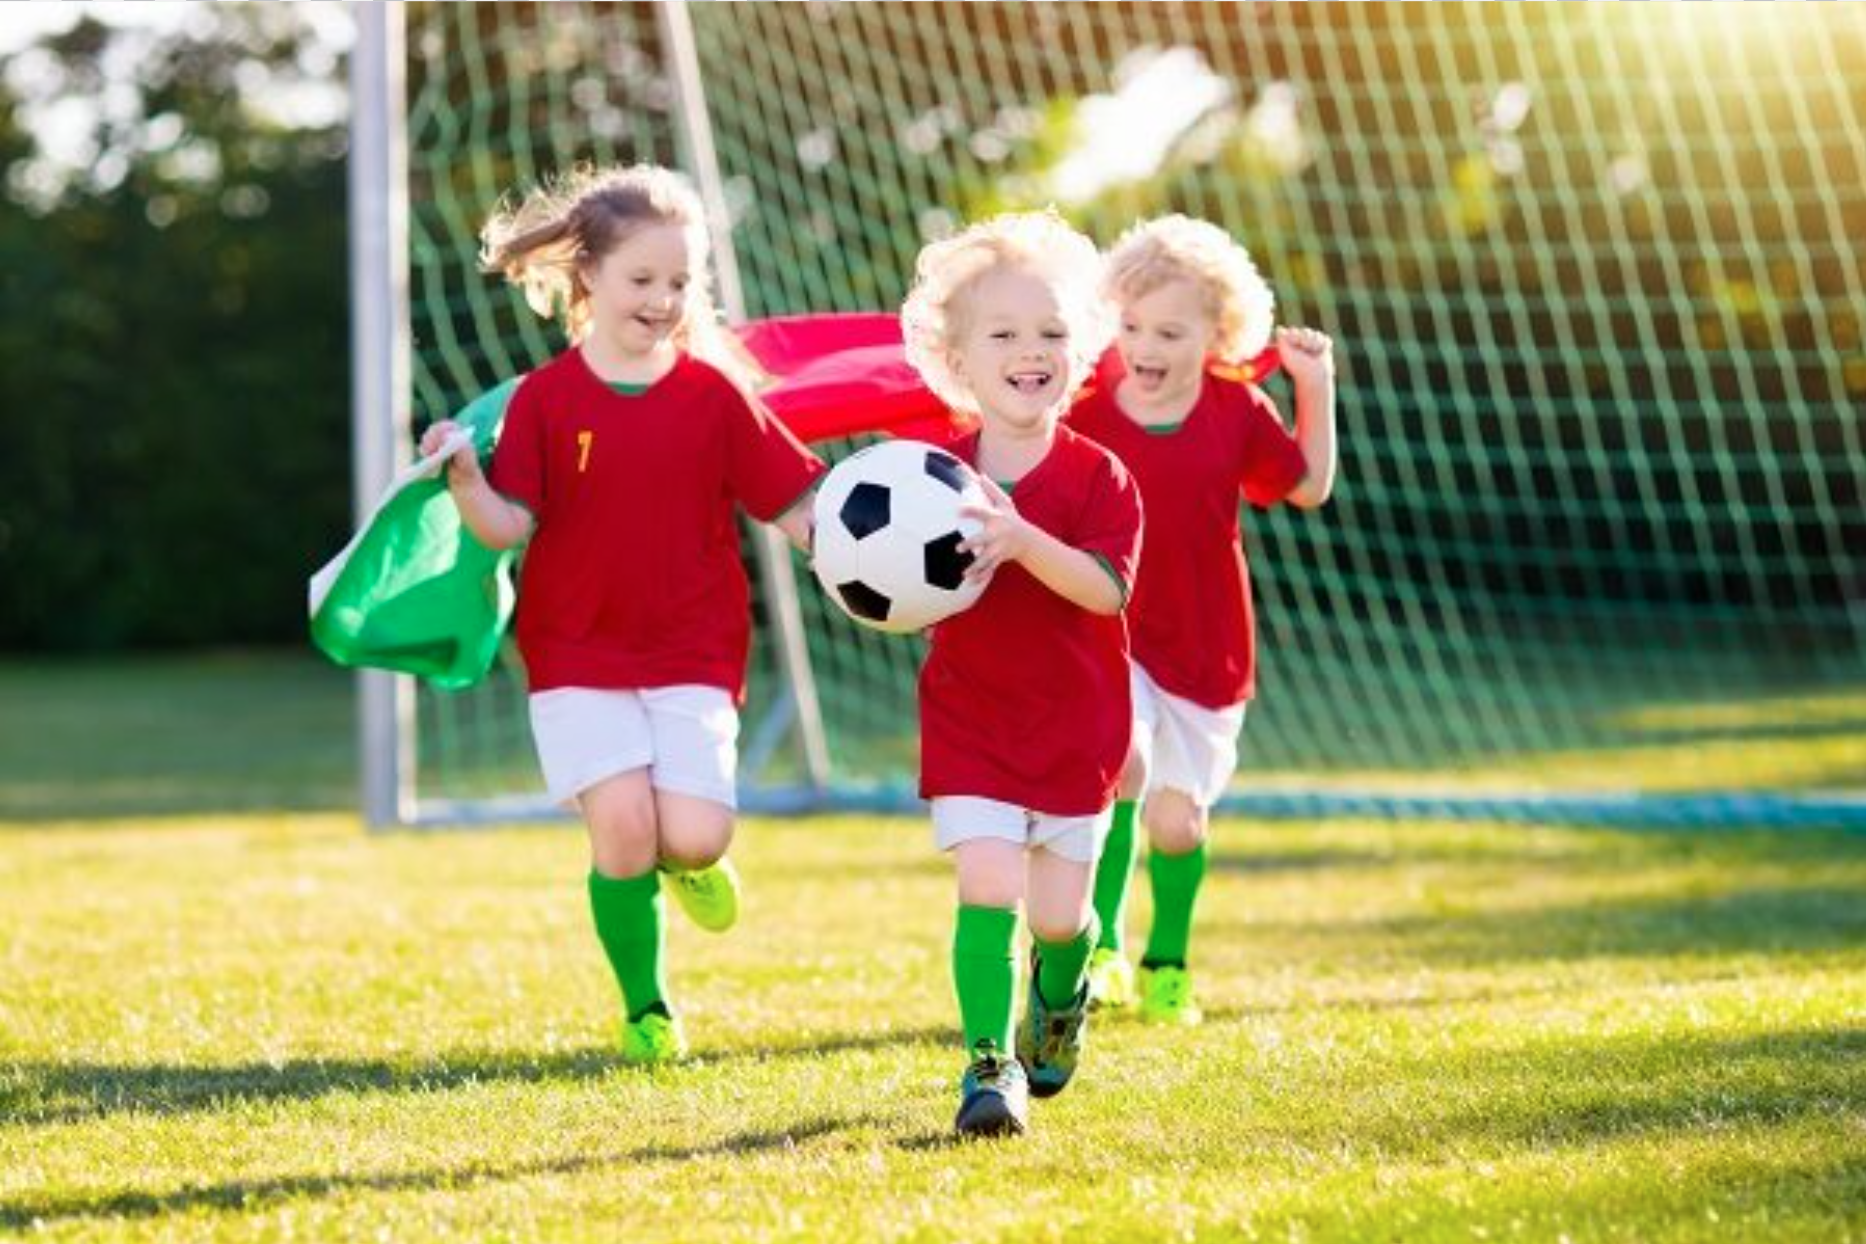 Bambini e sport: l’importanza dell’attività sportiva per i più piccoli